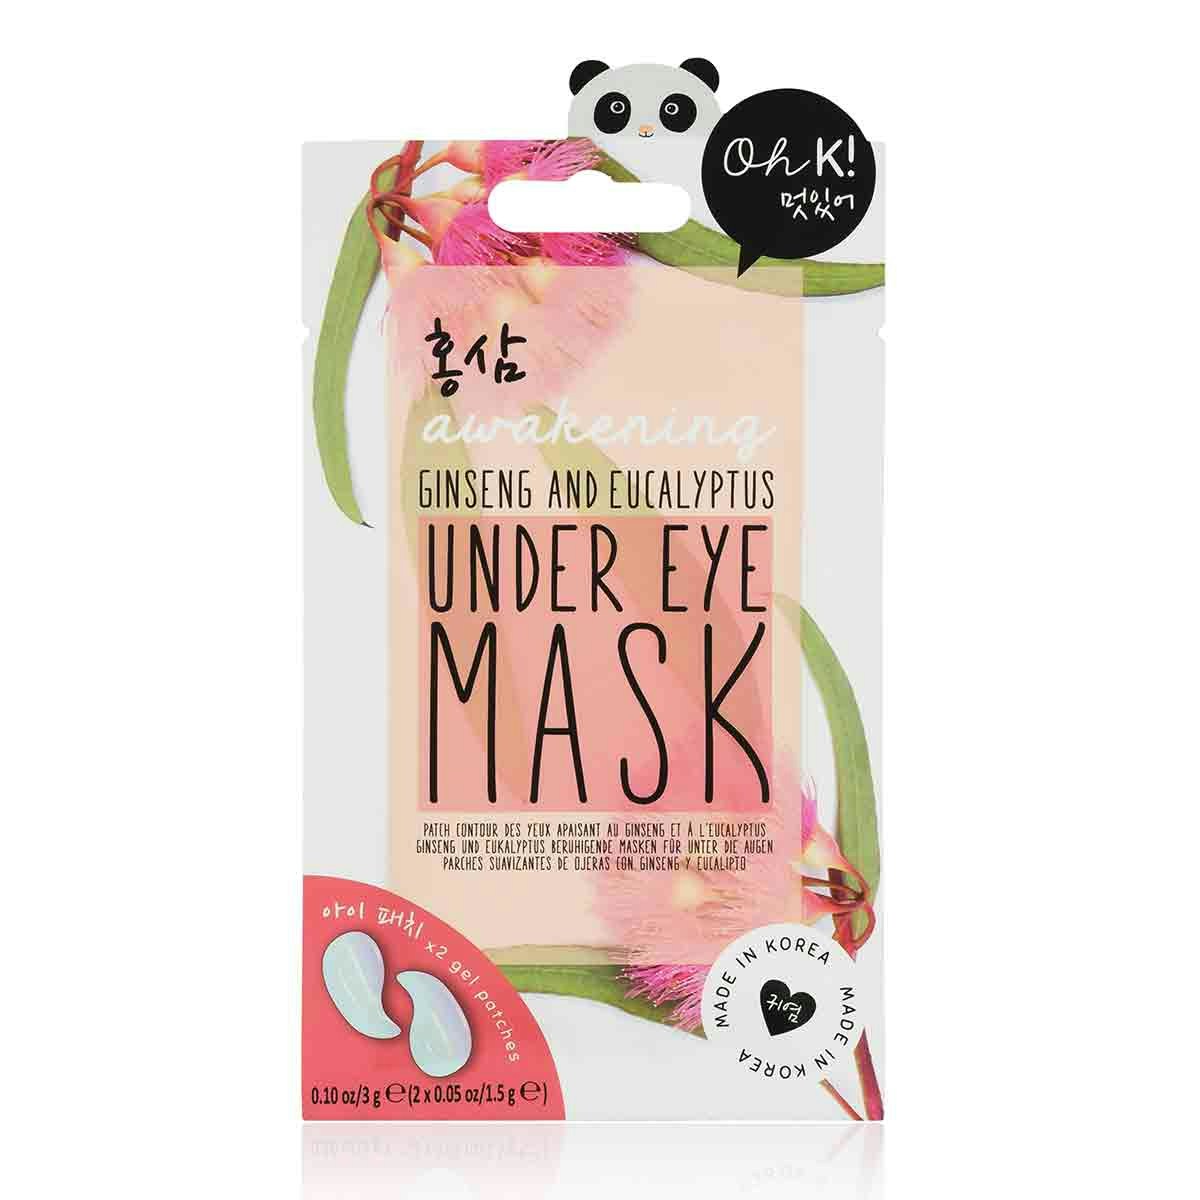 OH K! Ginseng & Eucalyptus Under Eye Mask | Indulge Beauty | The ...